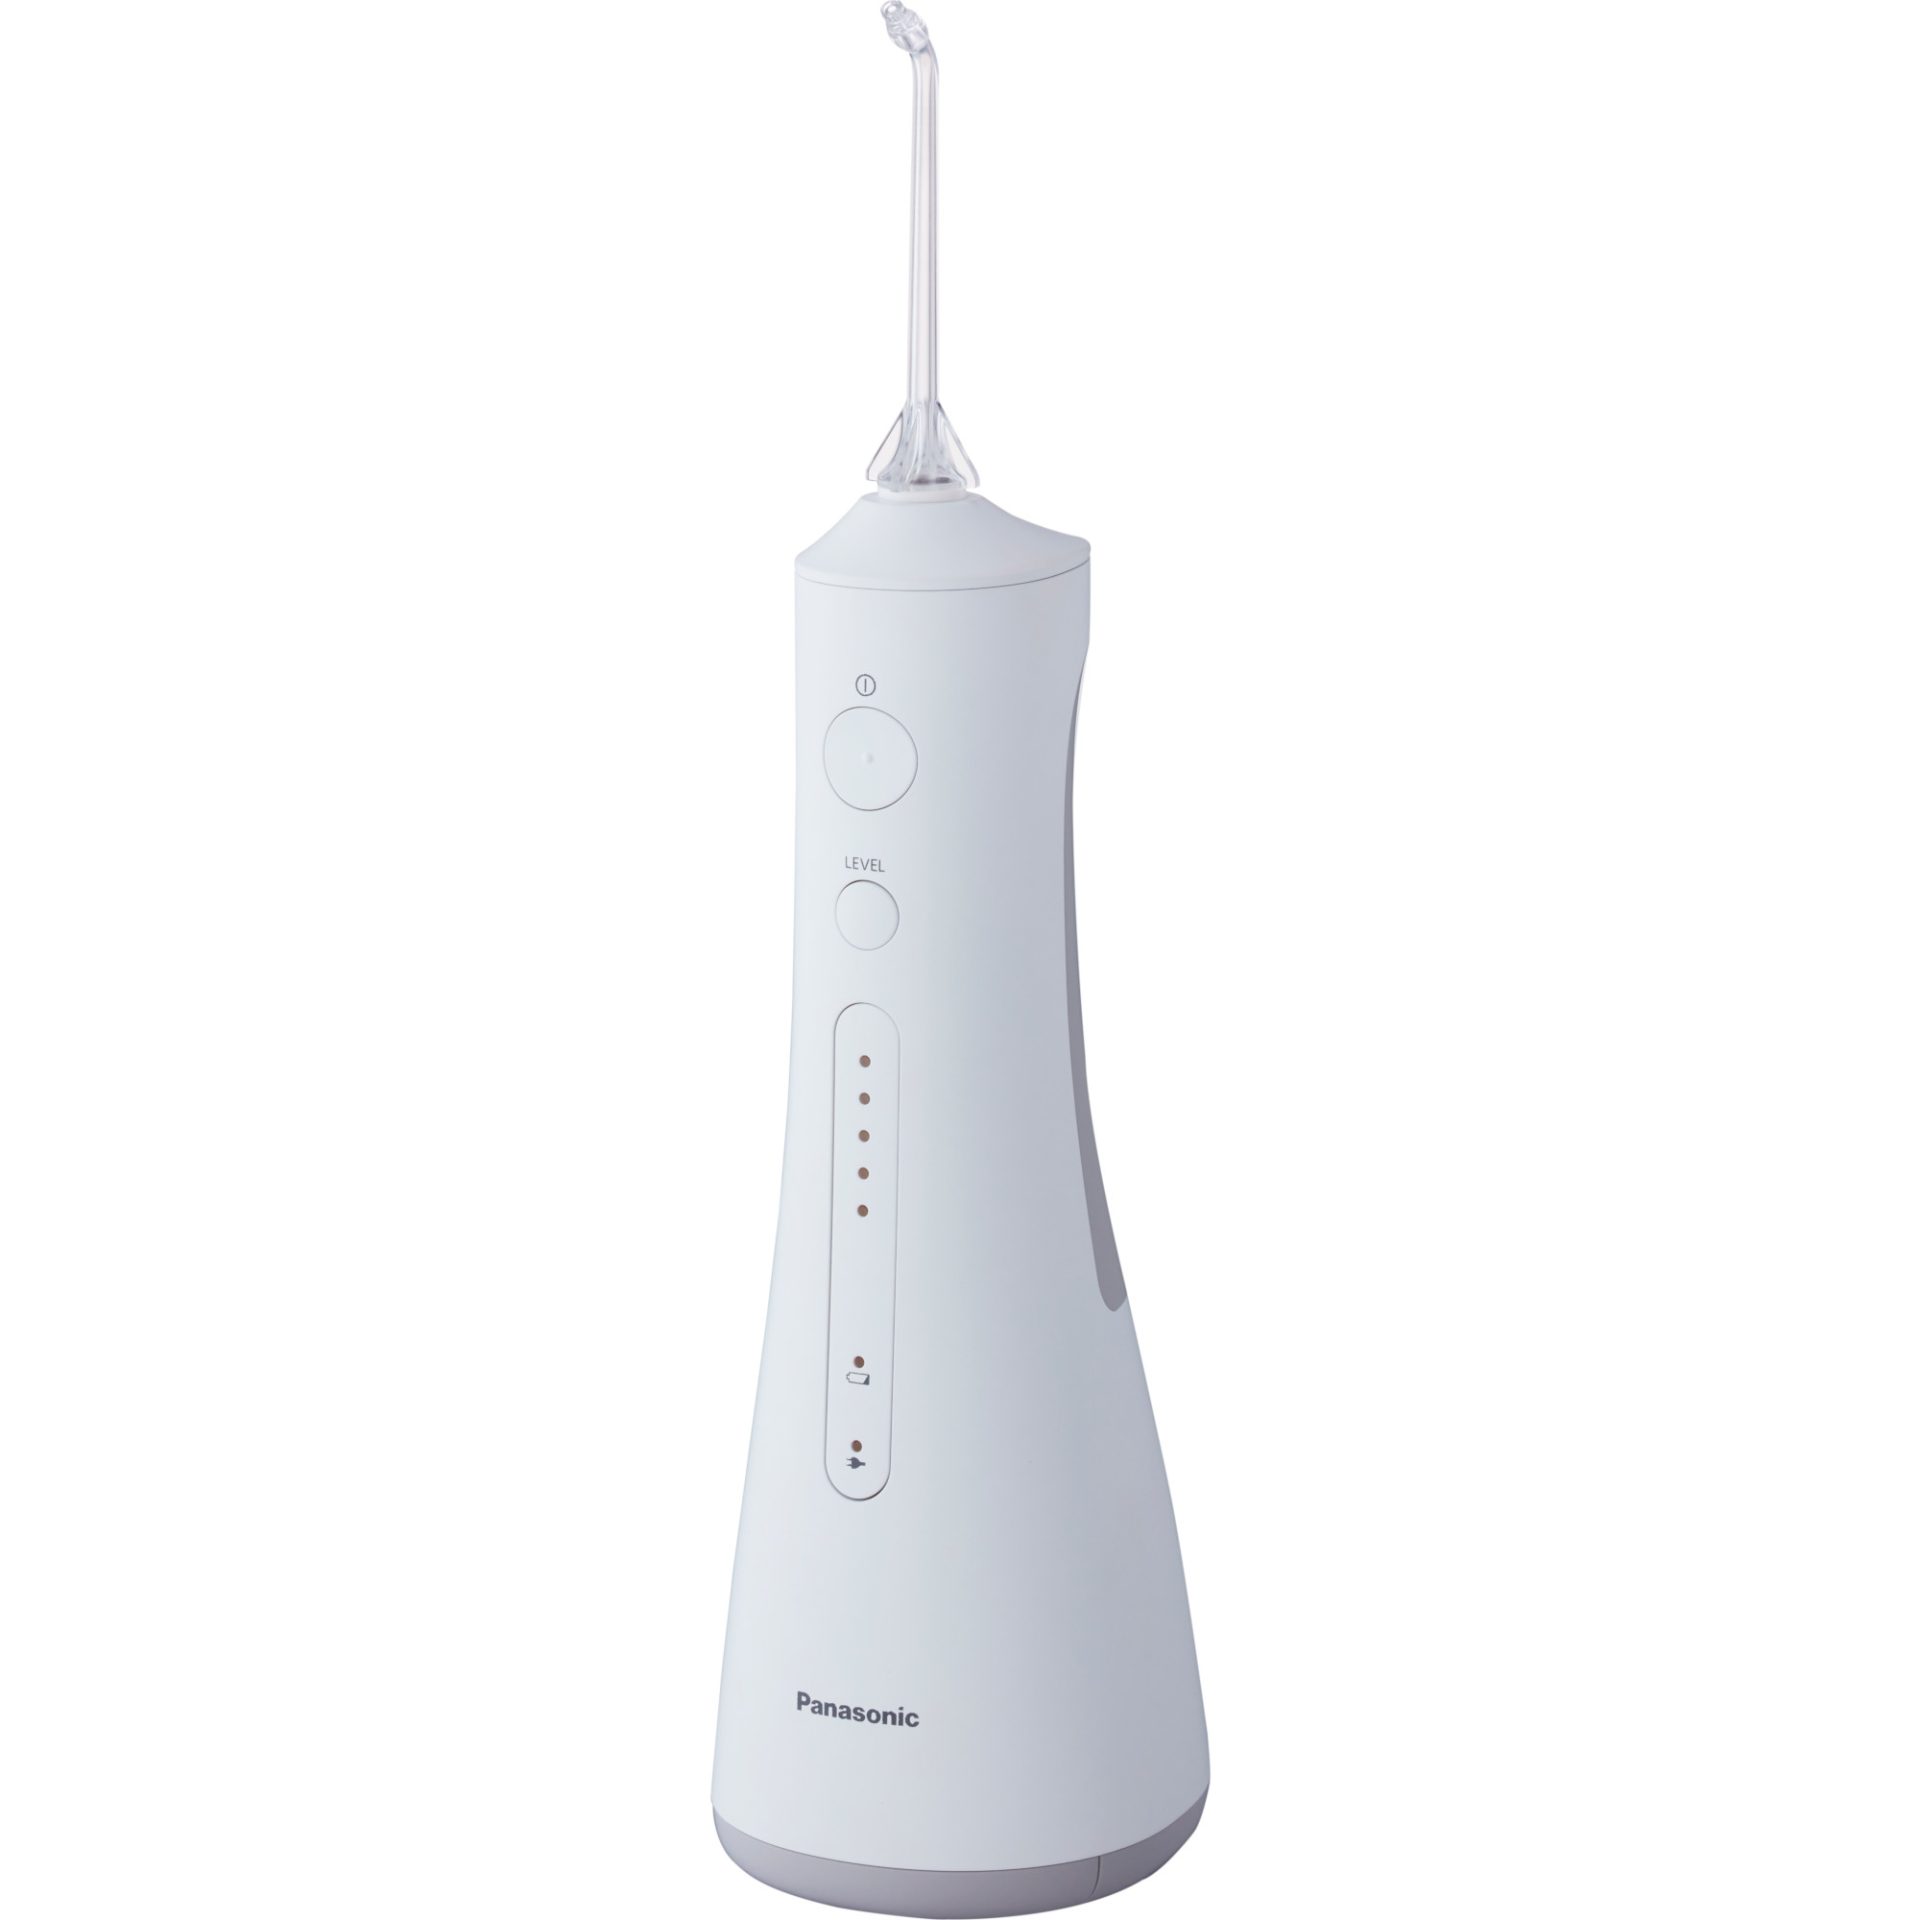 Panasonic EW1511W503 přenosná ústní sprcha s ultrazvukovou technologií (nabíjení 1h, 5 stupňů tlaku vodního paprsku (max. 647kPa), nádrž 200ml), bílá